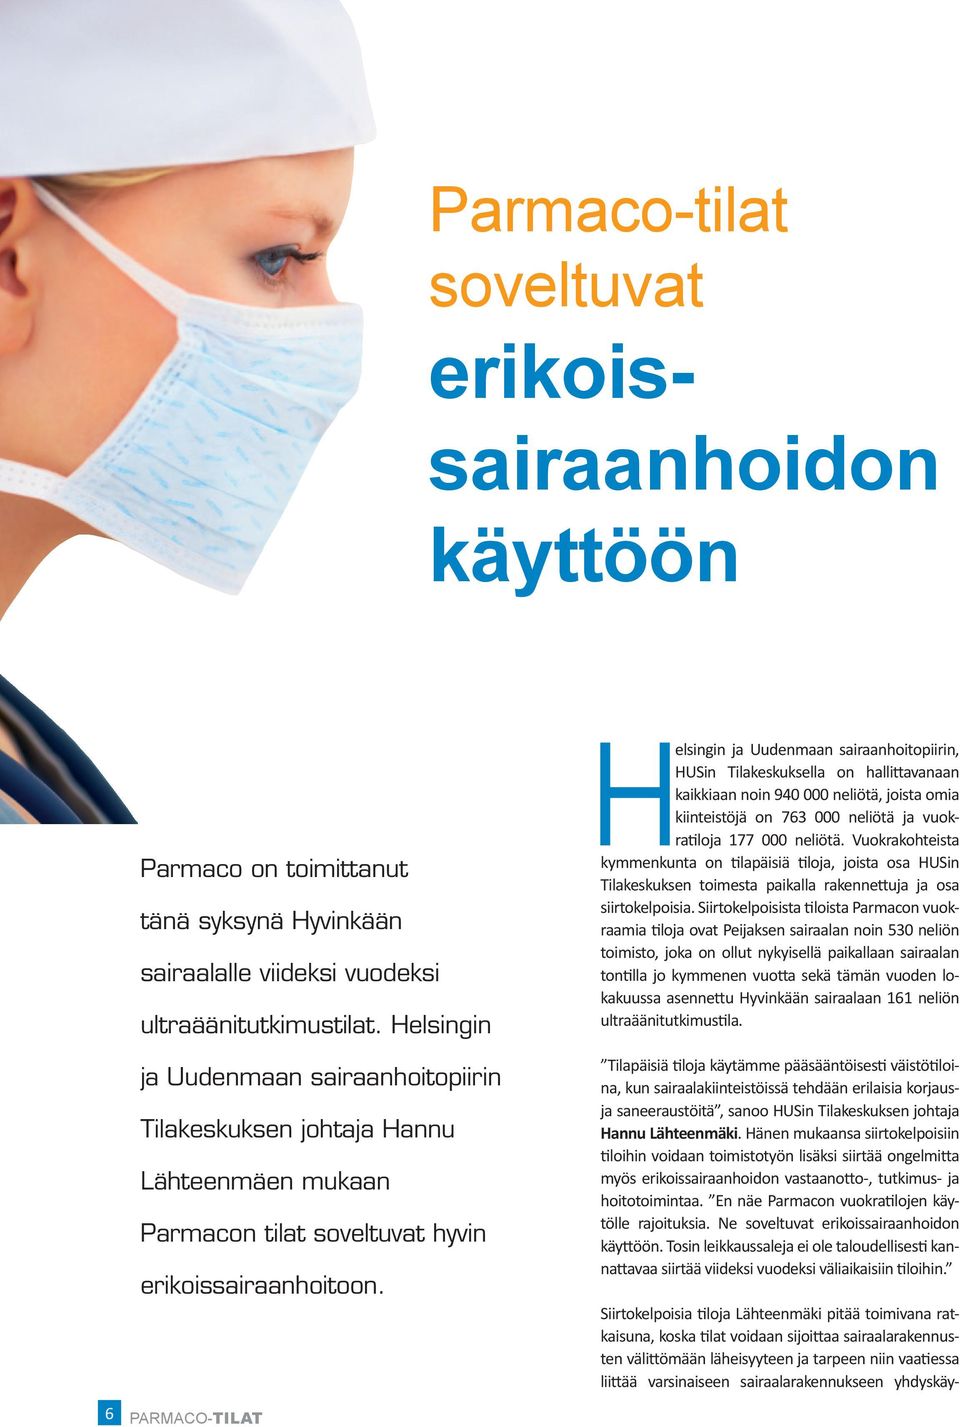 Helsingin ja Uudenmaan sairaanhoitopiirin Tilakeskuksen johtaja Hannu Lähteenmäen mukaan Parmacon tilat soveltuvat hyvin erikoissairaanhoitoon.